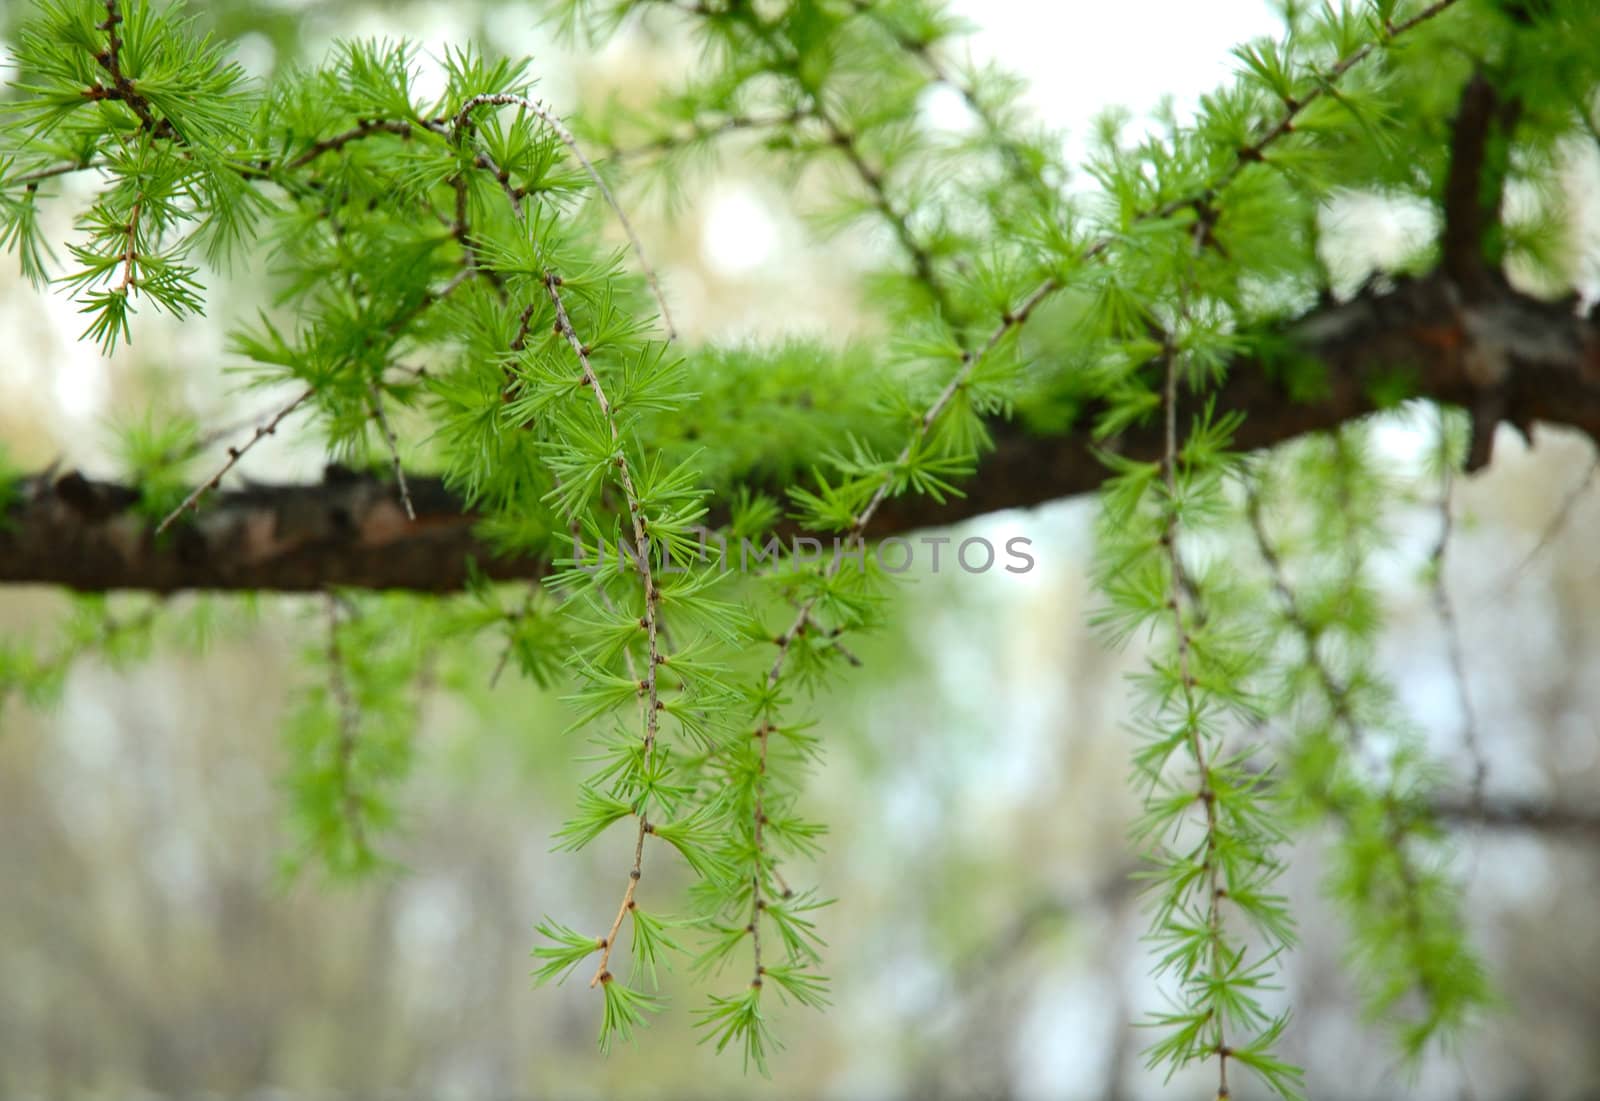 Green conifer branchlets - natural spring background.